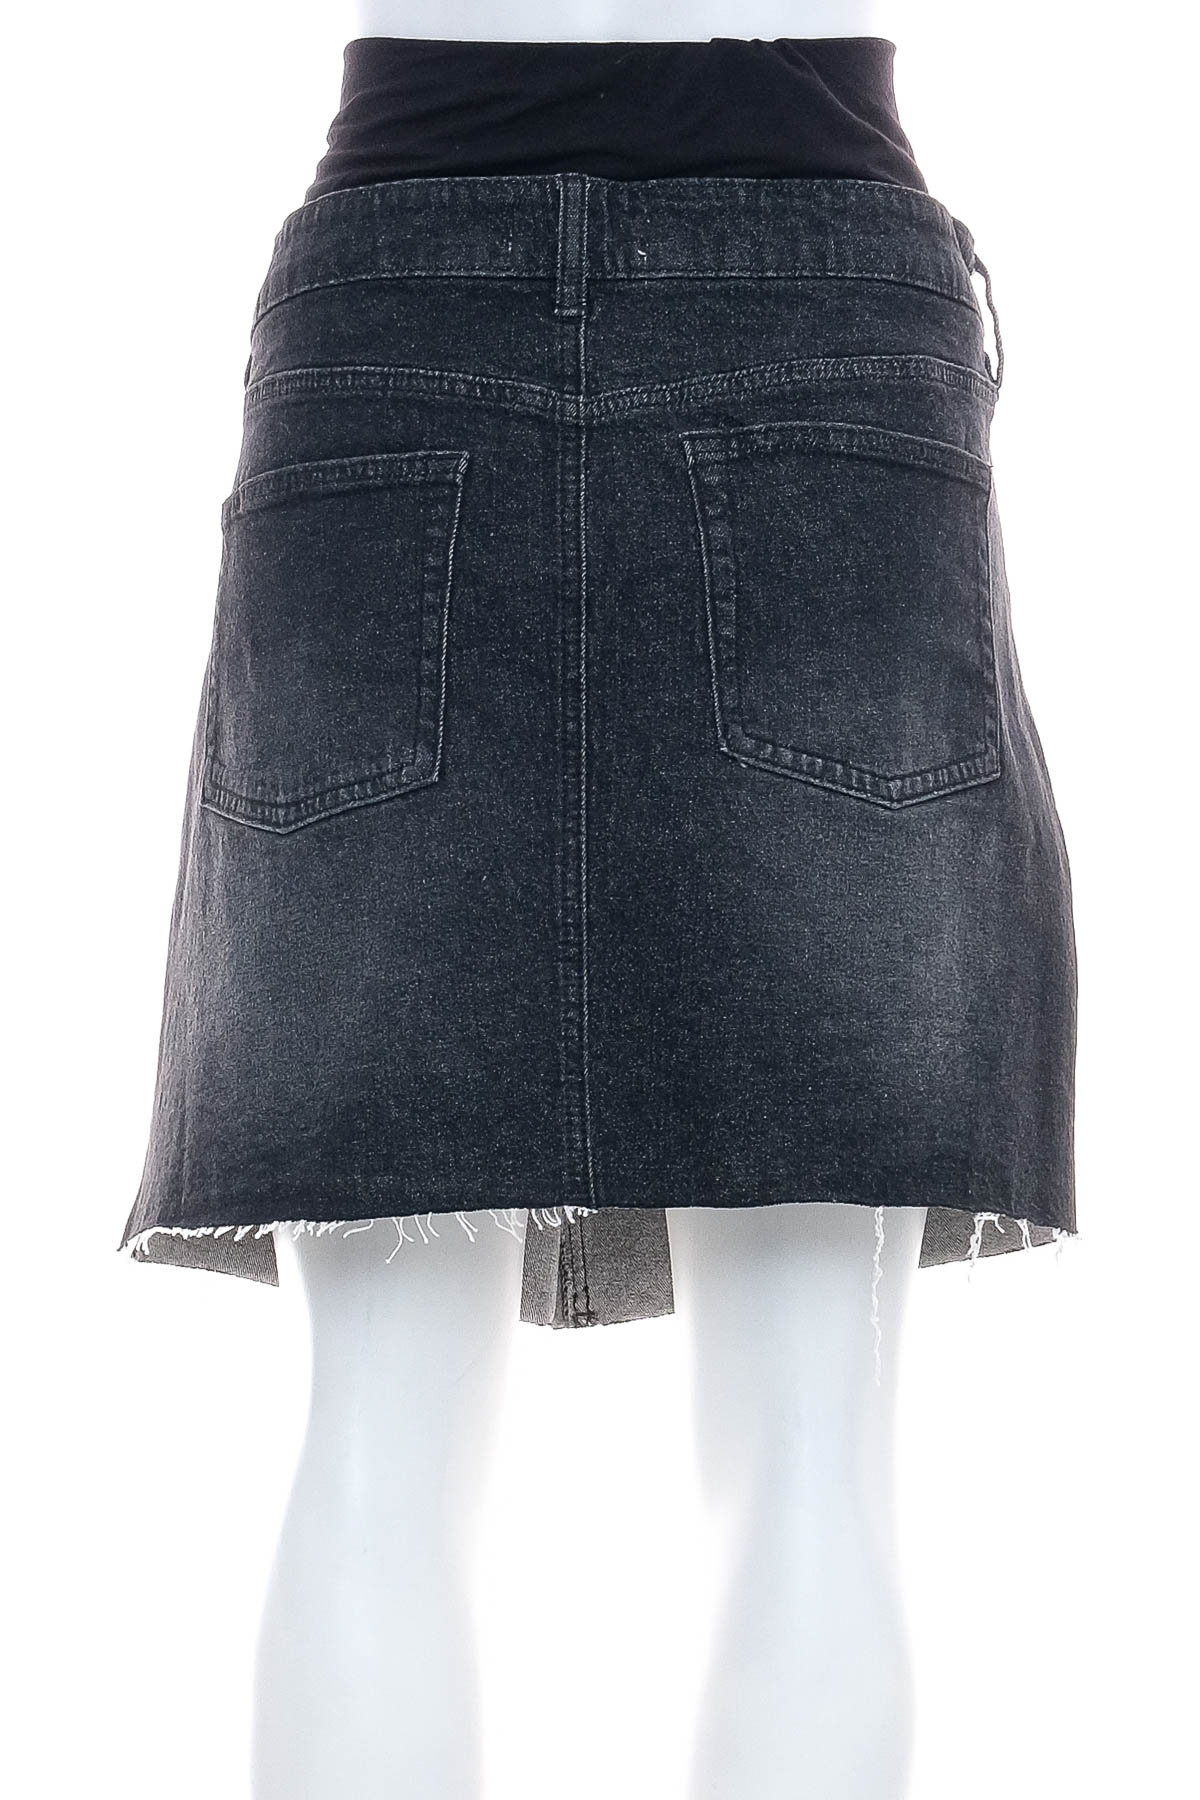 Denim skirt for pregnant women - Maiamae - 1